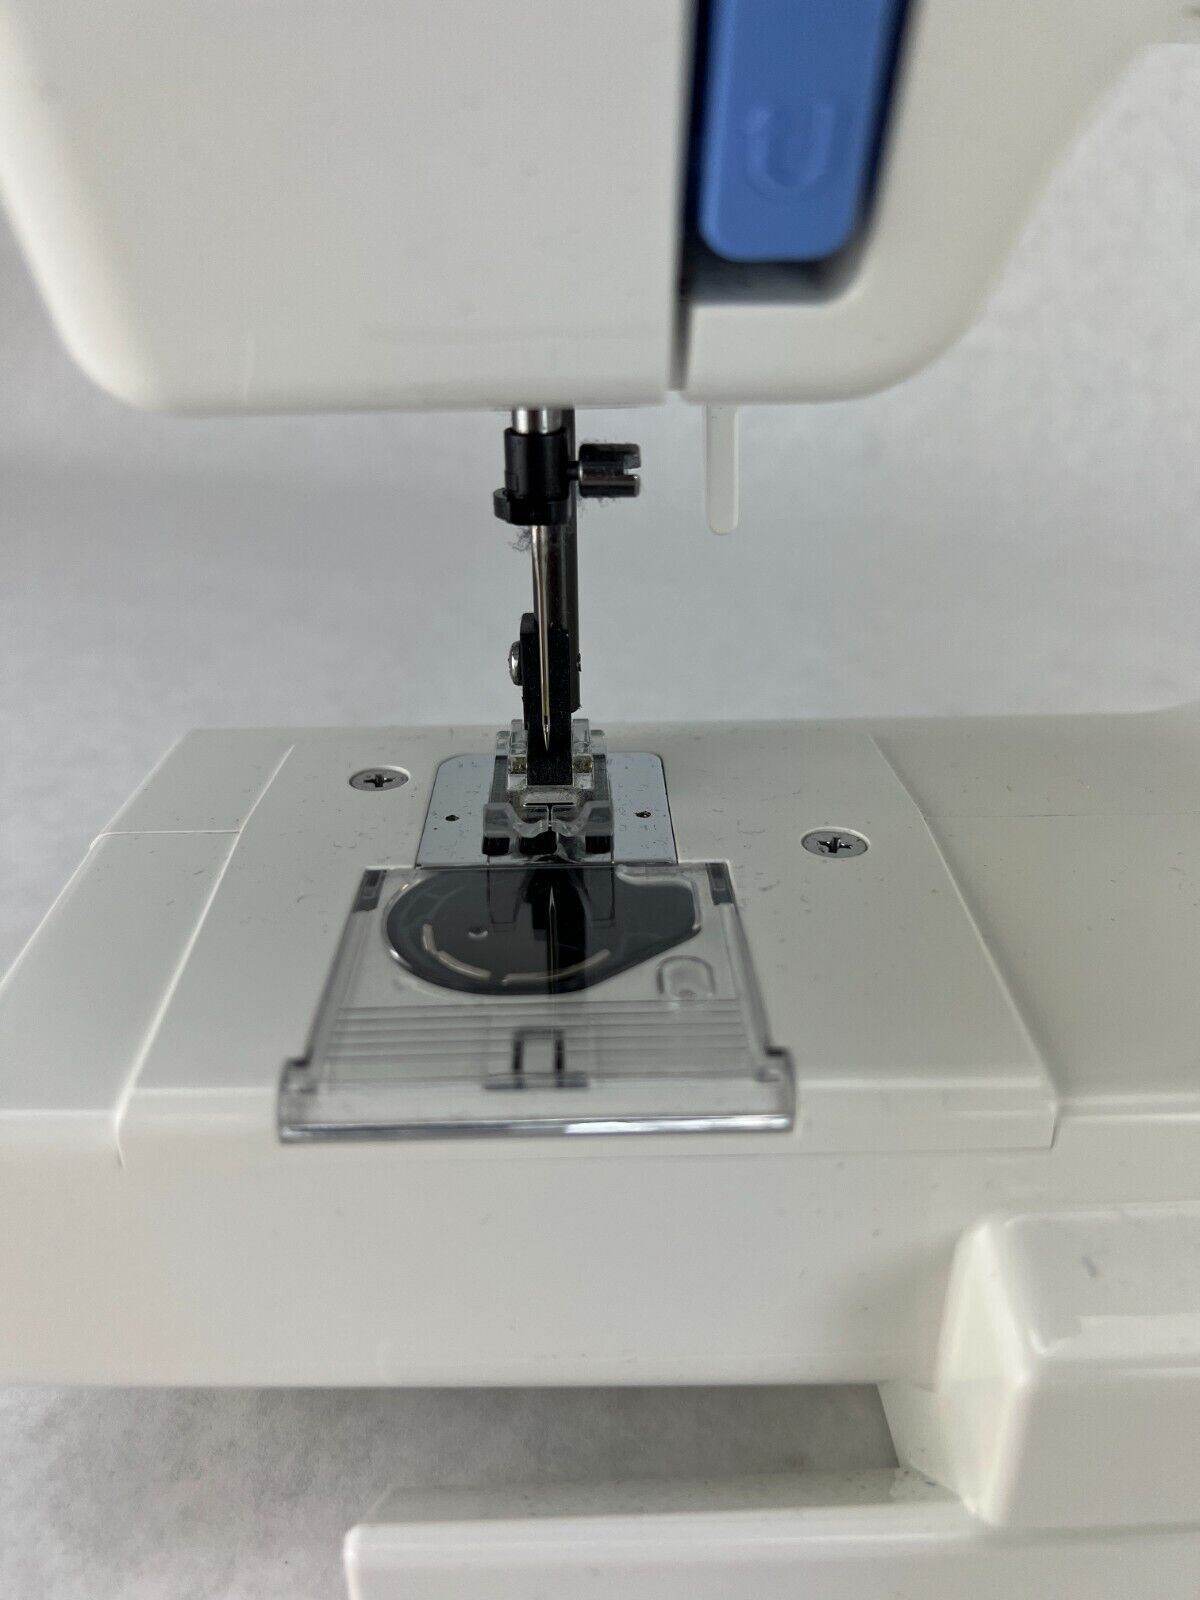 Janome Sears Kenmore 11803 1/2 Size Sewing Machine - 8 Stitch